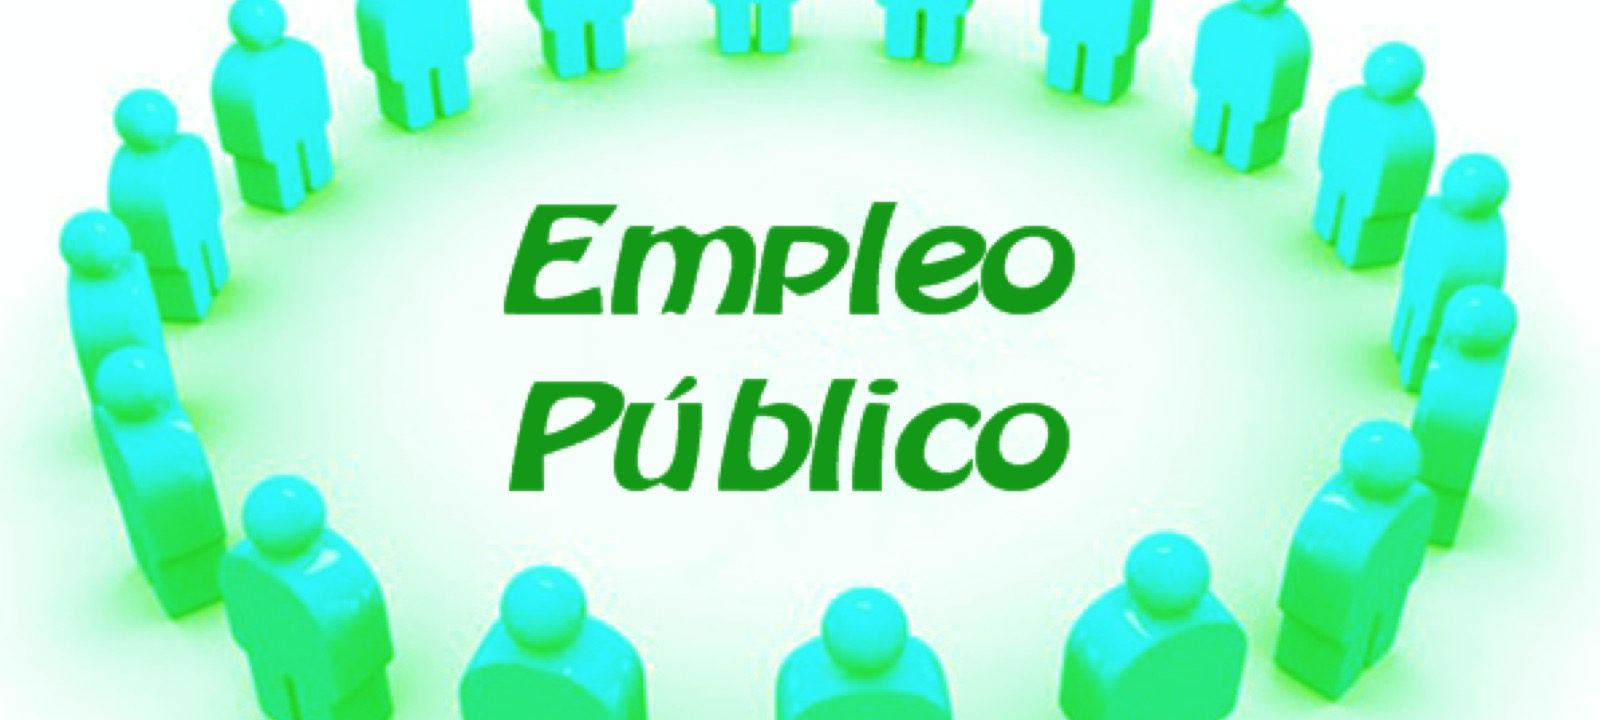 La Junta Local aprueba la oferta de 10 plazas de empleo público para el ejercicio 2021